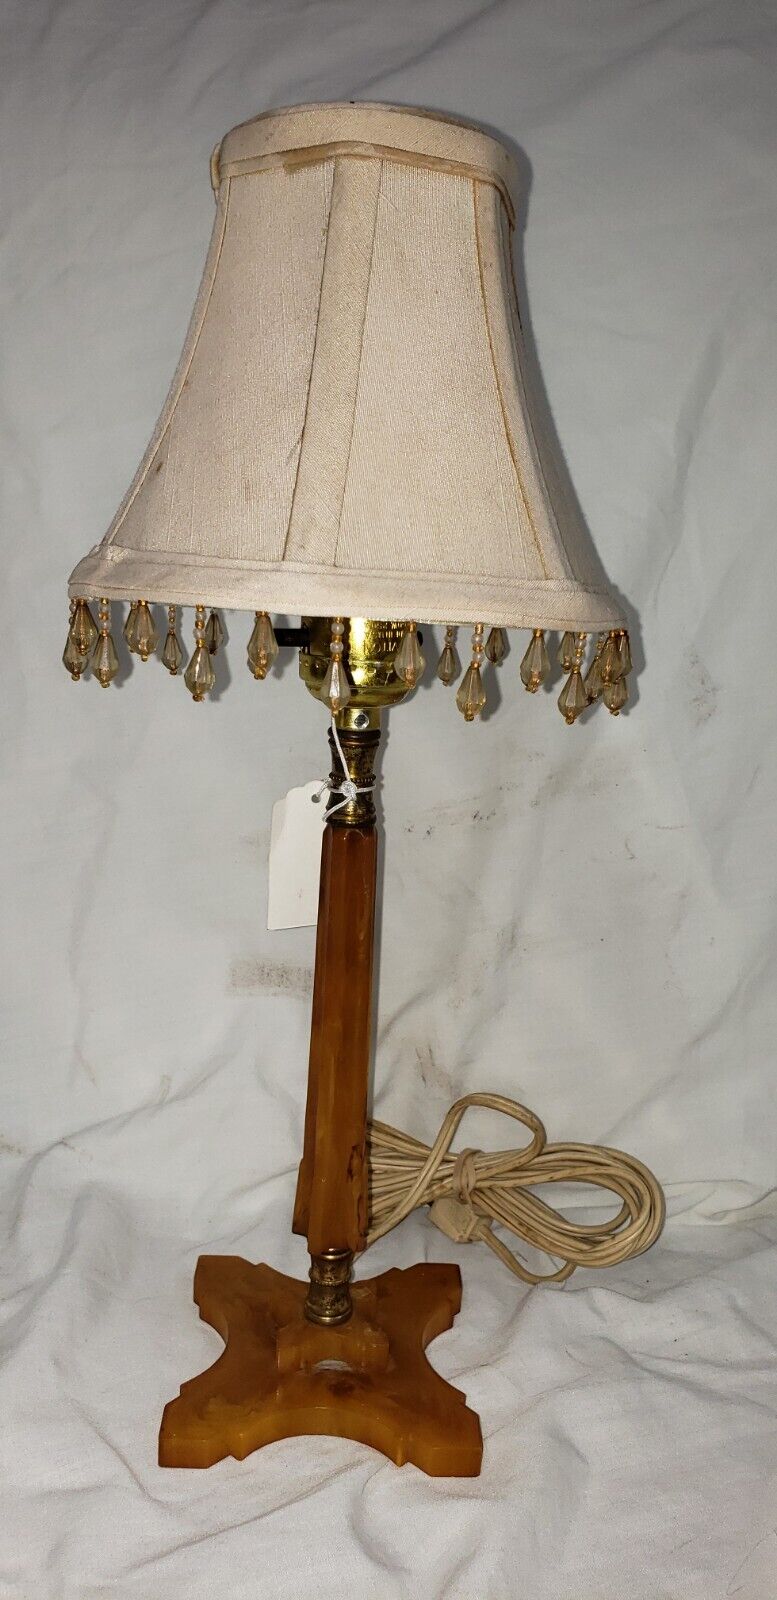 Antique Art Deco Bakelite/butterscotch table lamp